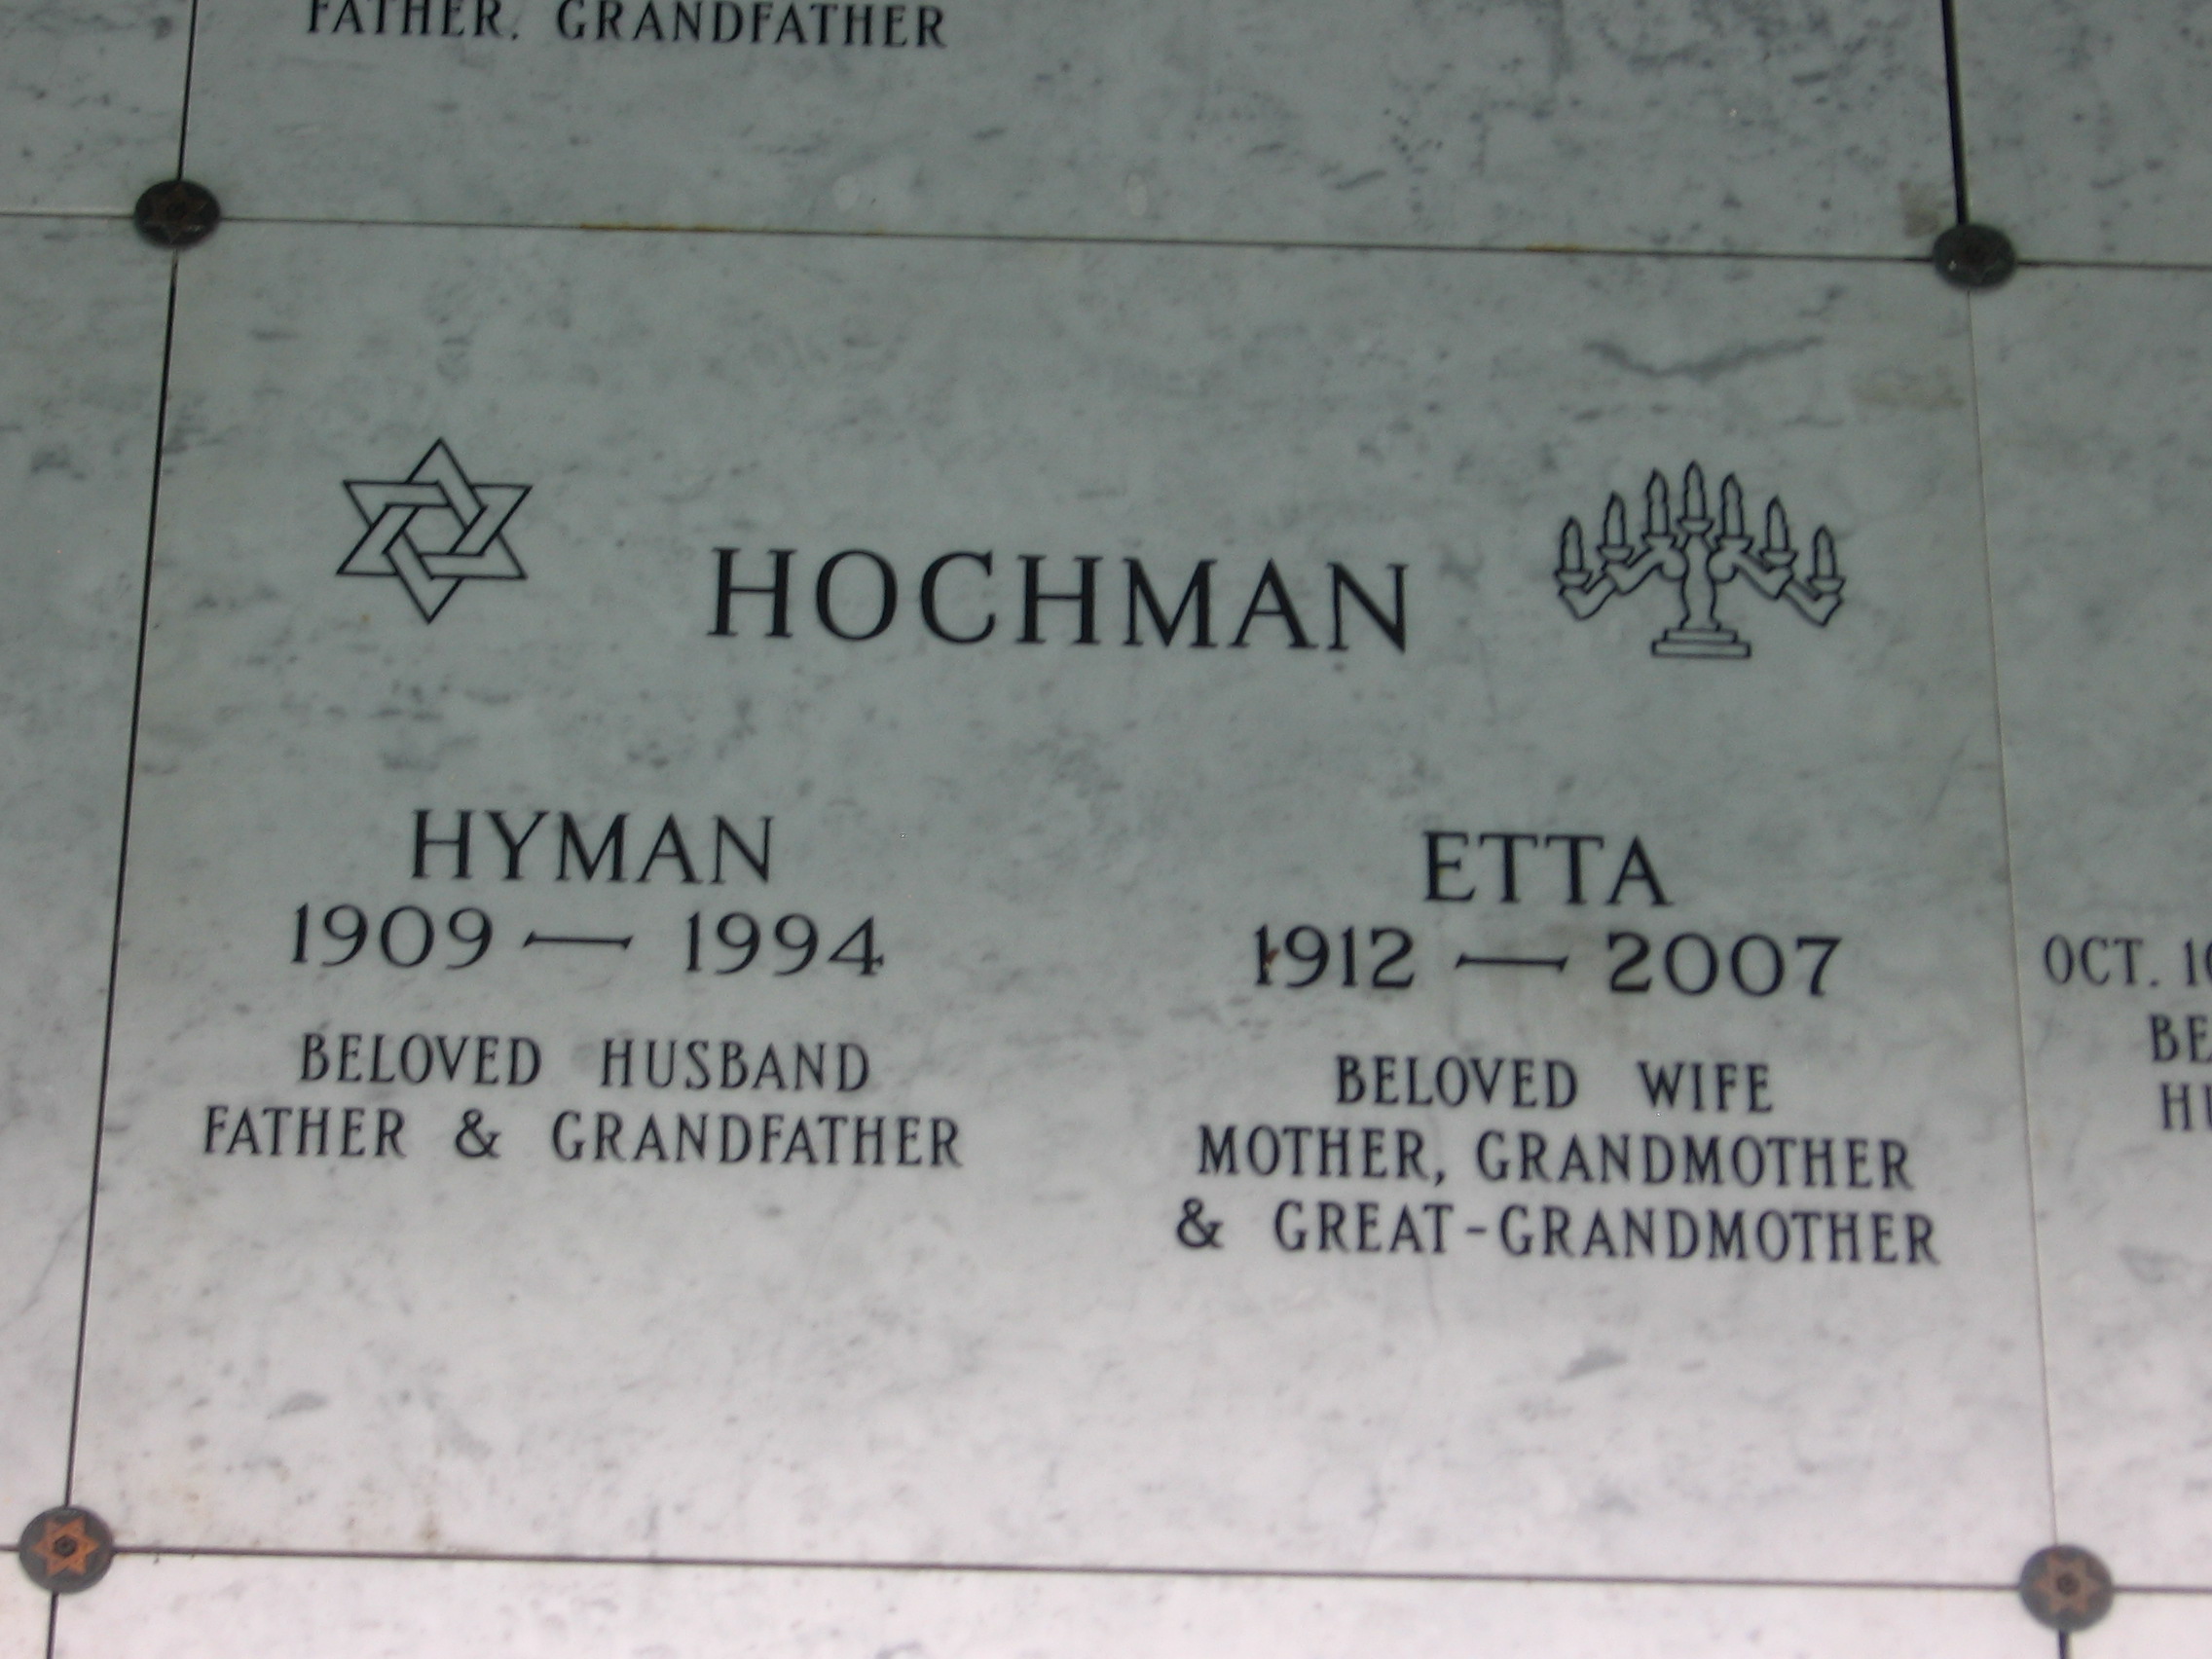 Hyman Hochman